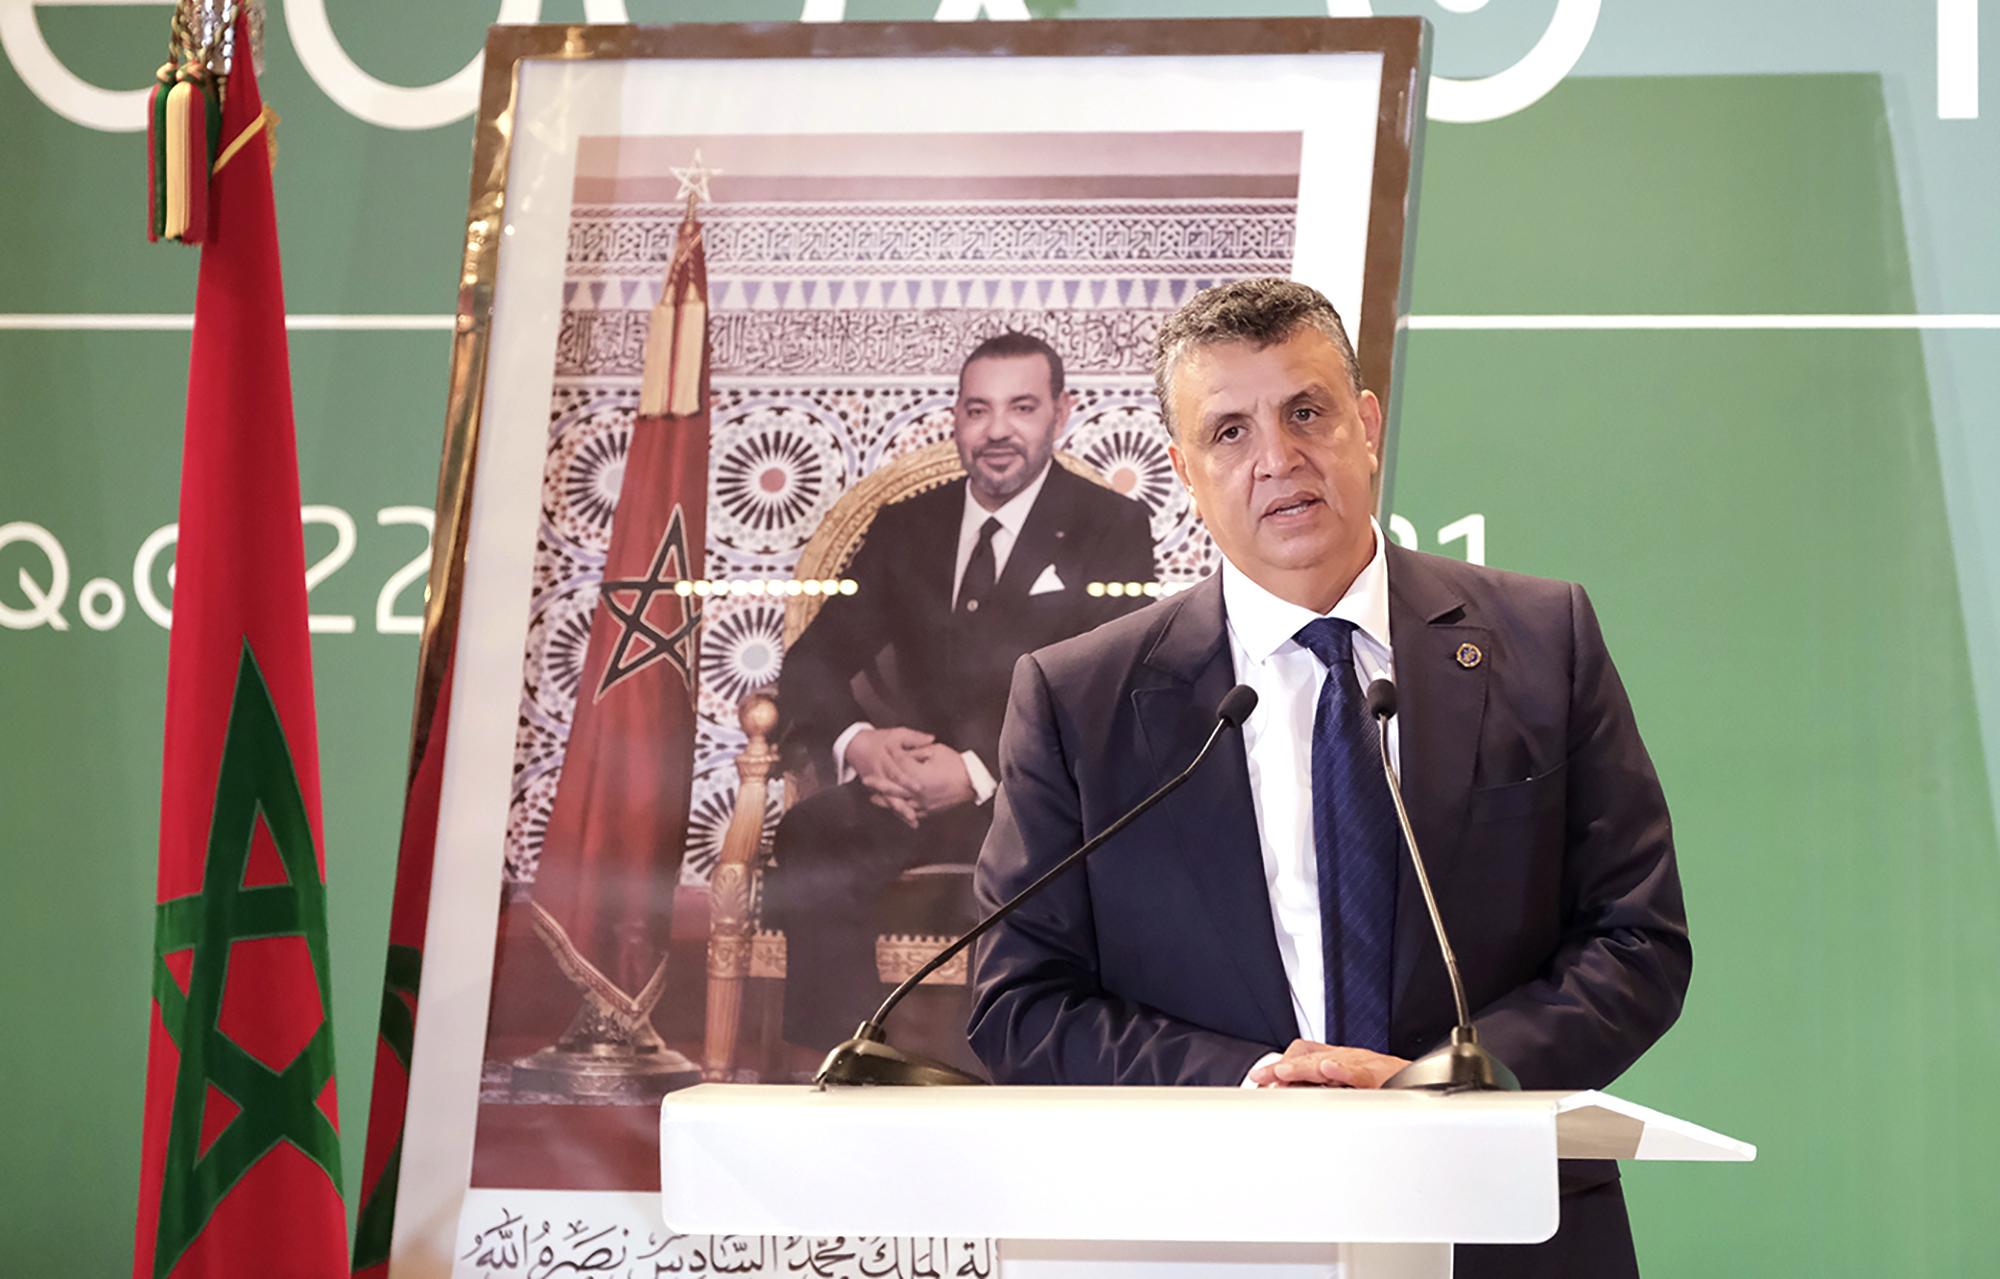 モロッコで新内閣発足 王党派アハヌッシュ首相 - 産経ニュース